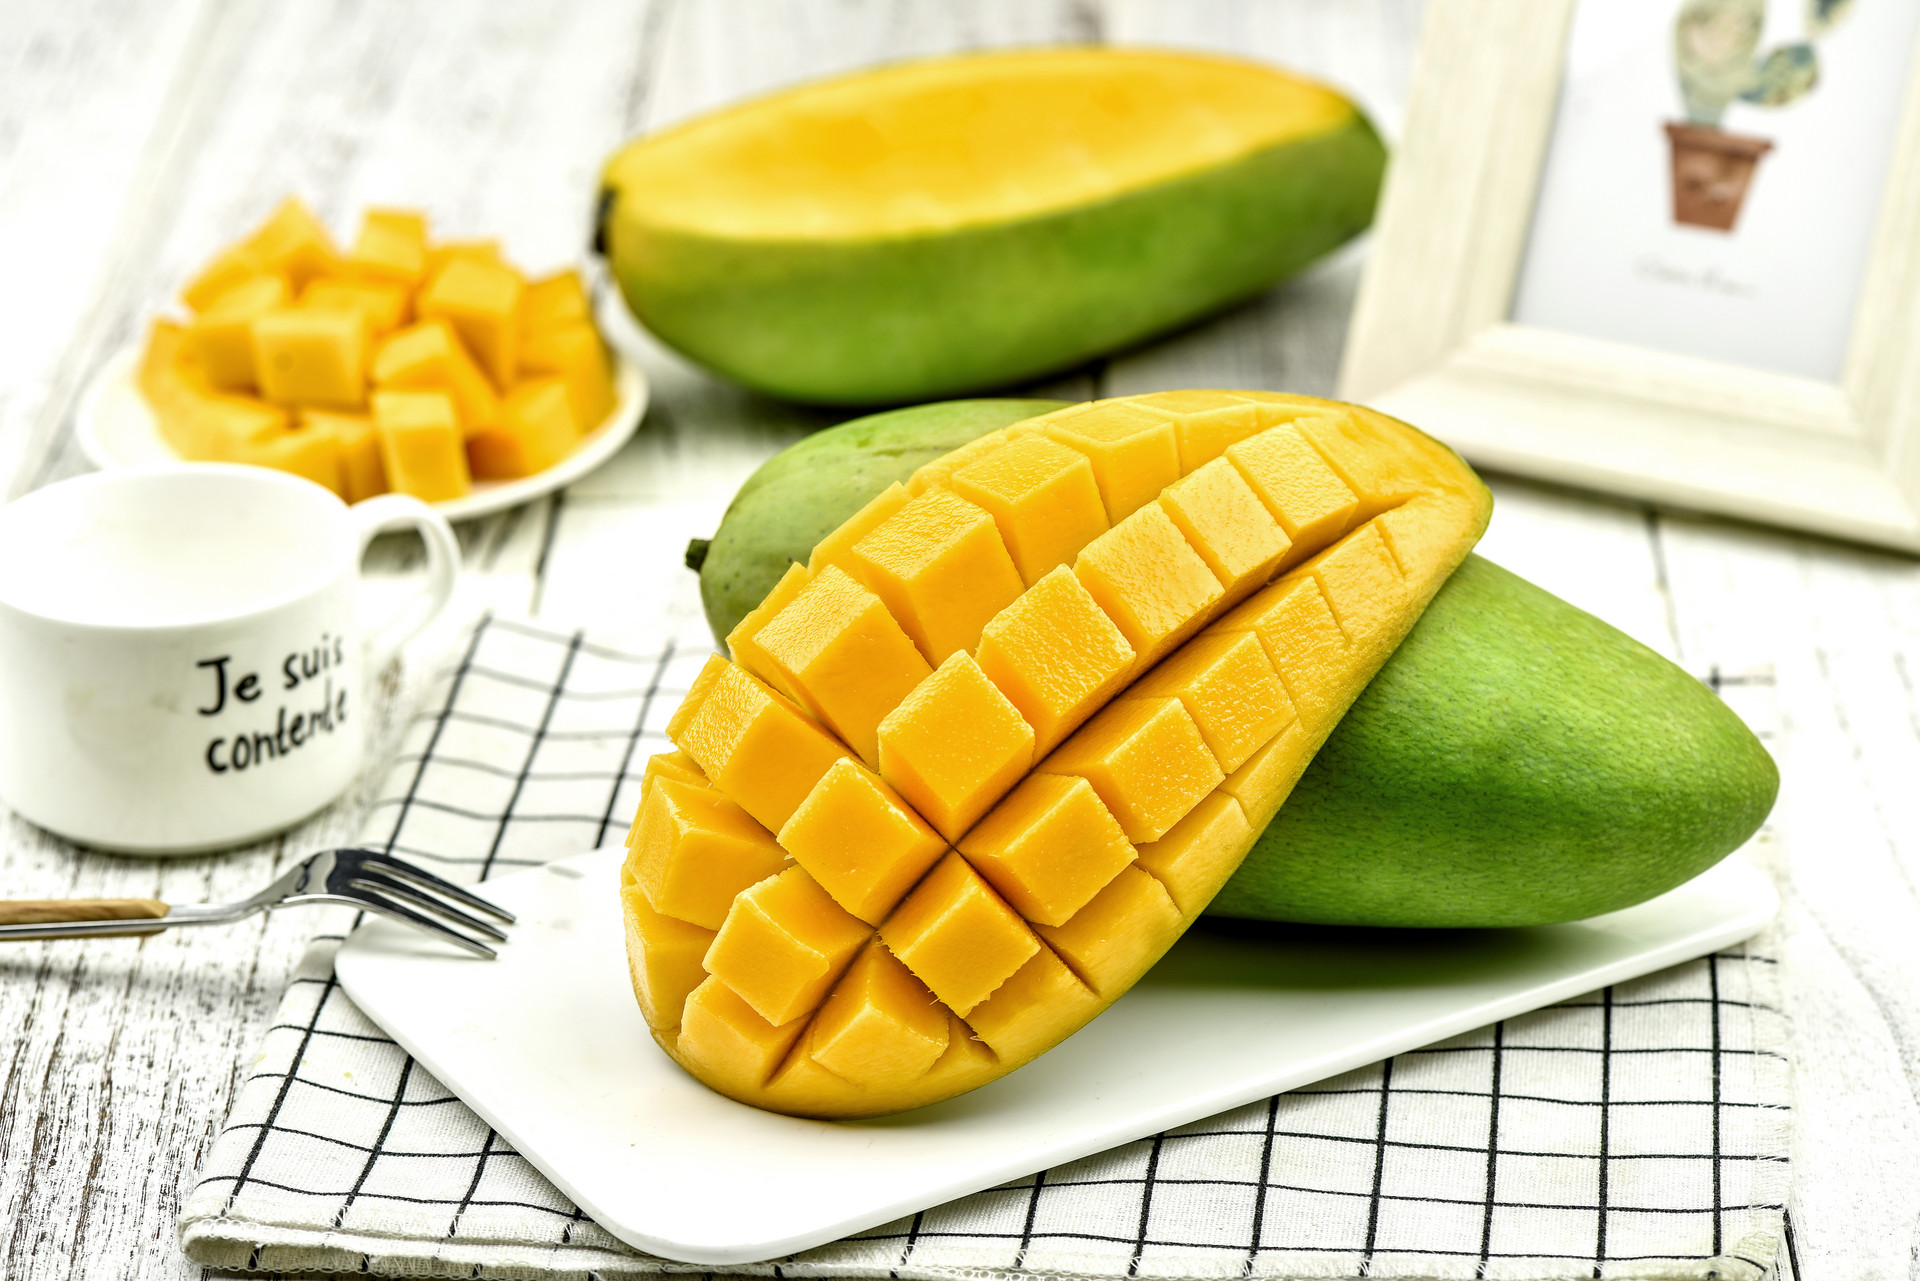 【水果知識】芒果有黑點可以吃嗎？芒果濕毒少吃為妙？解構芒果5大謬誤 | Health Concept